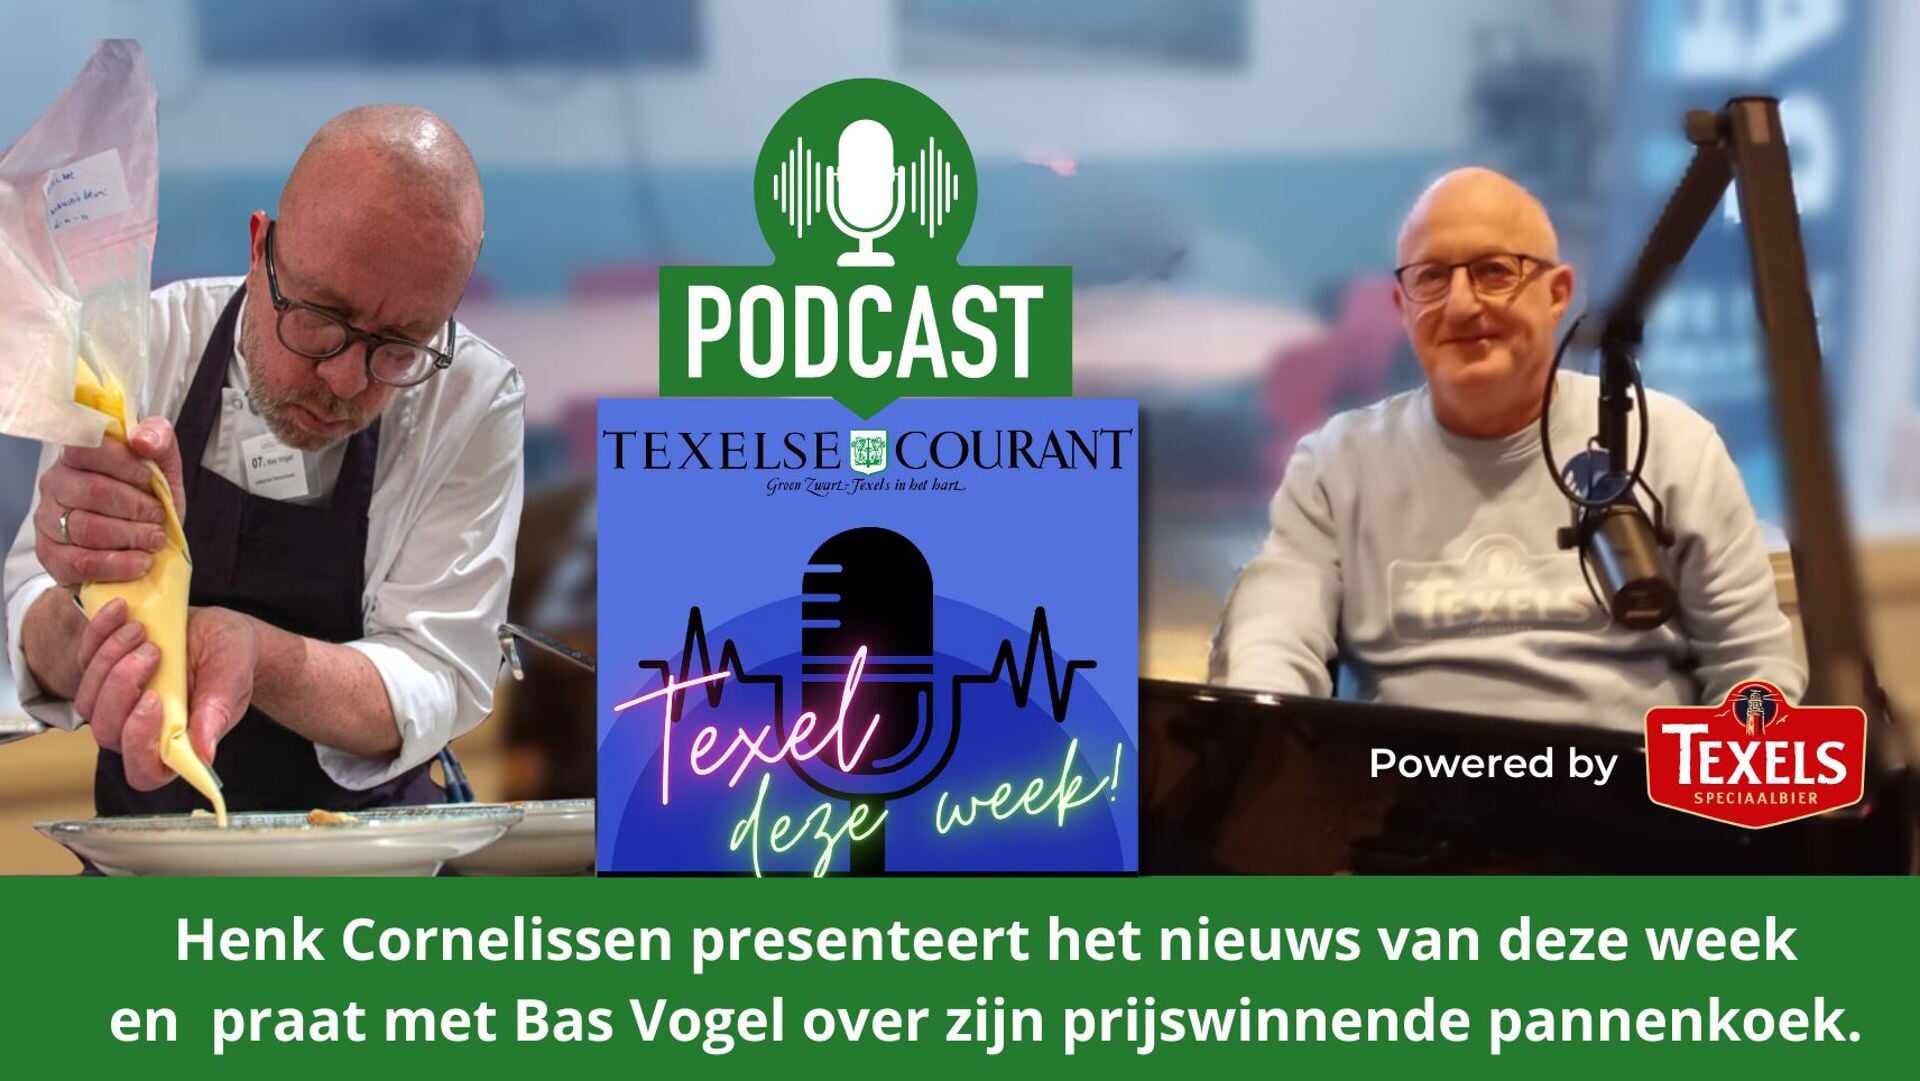 Henk Cornelissen praat in de podcast met Bas Vogel over zijn pannenkoeken waarmee hij in de prijzen viel.